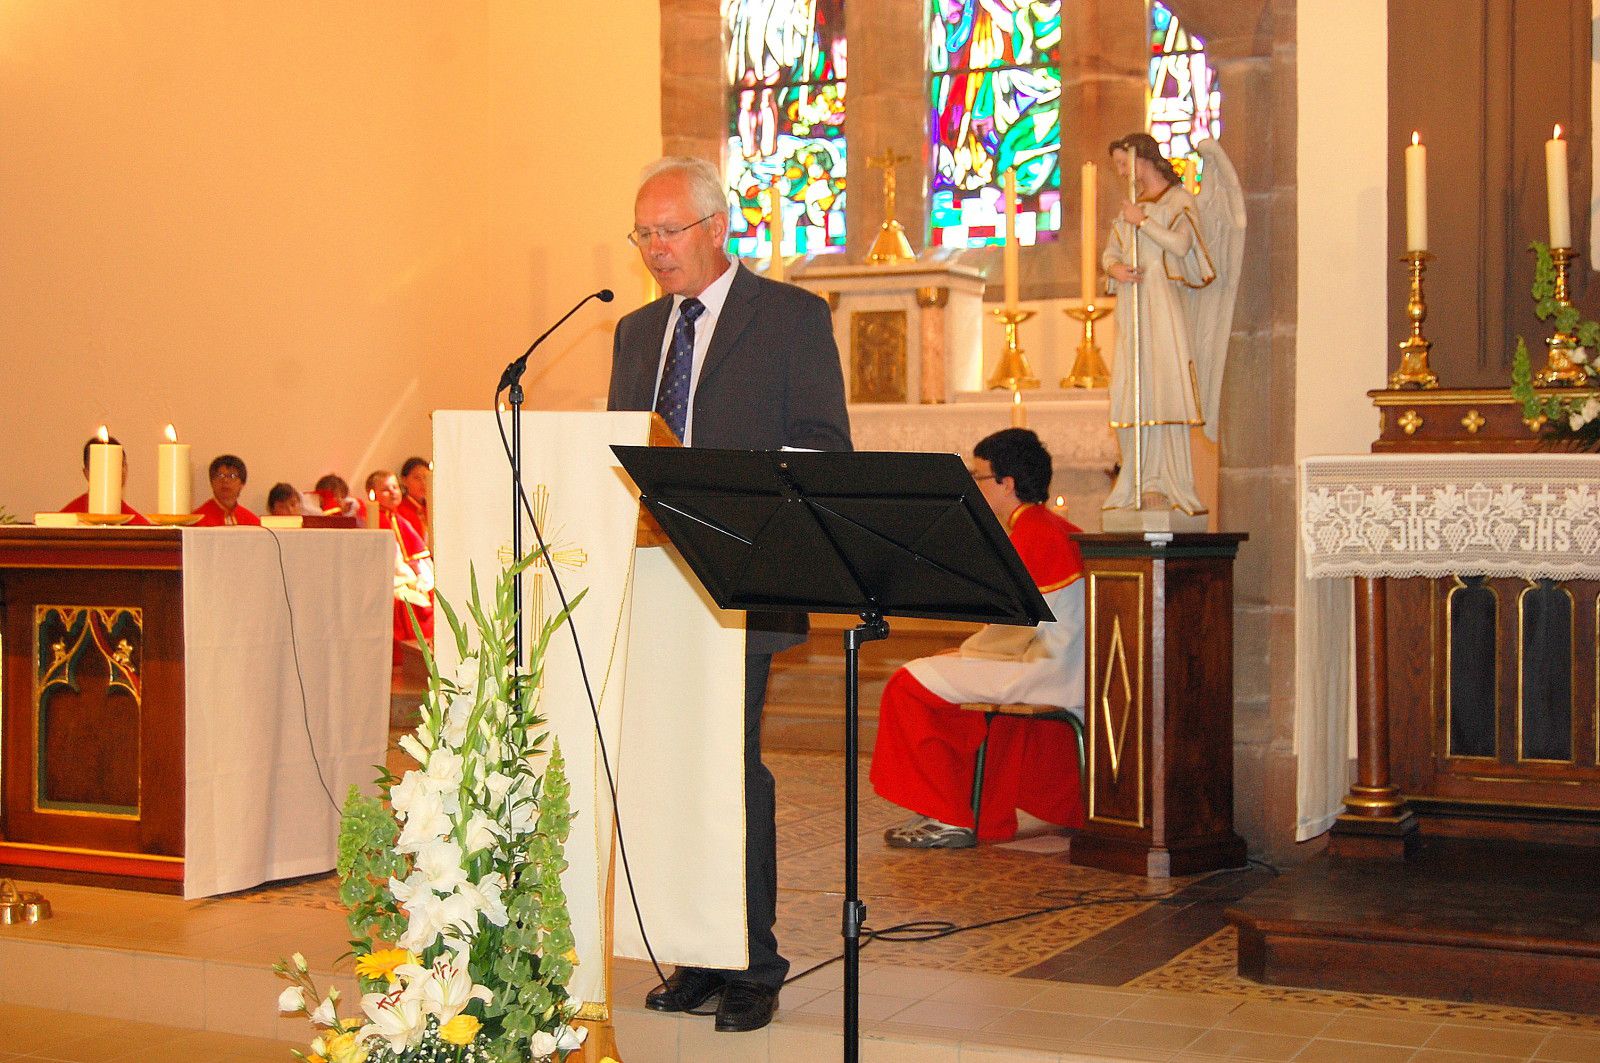 Messe inaugurale Eglise St Jacques de Mouterhouse le 8 juillet 201